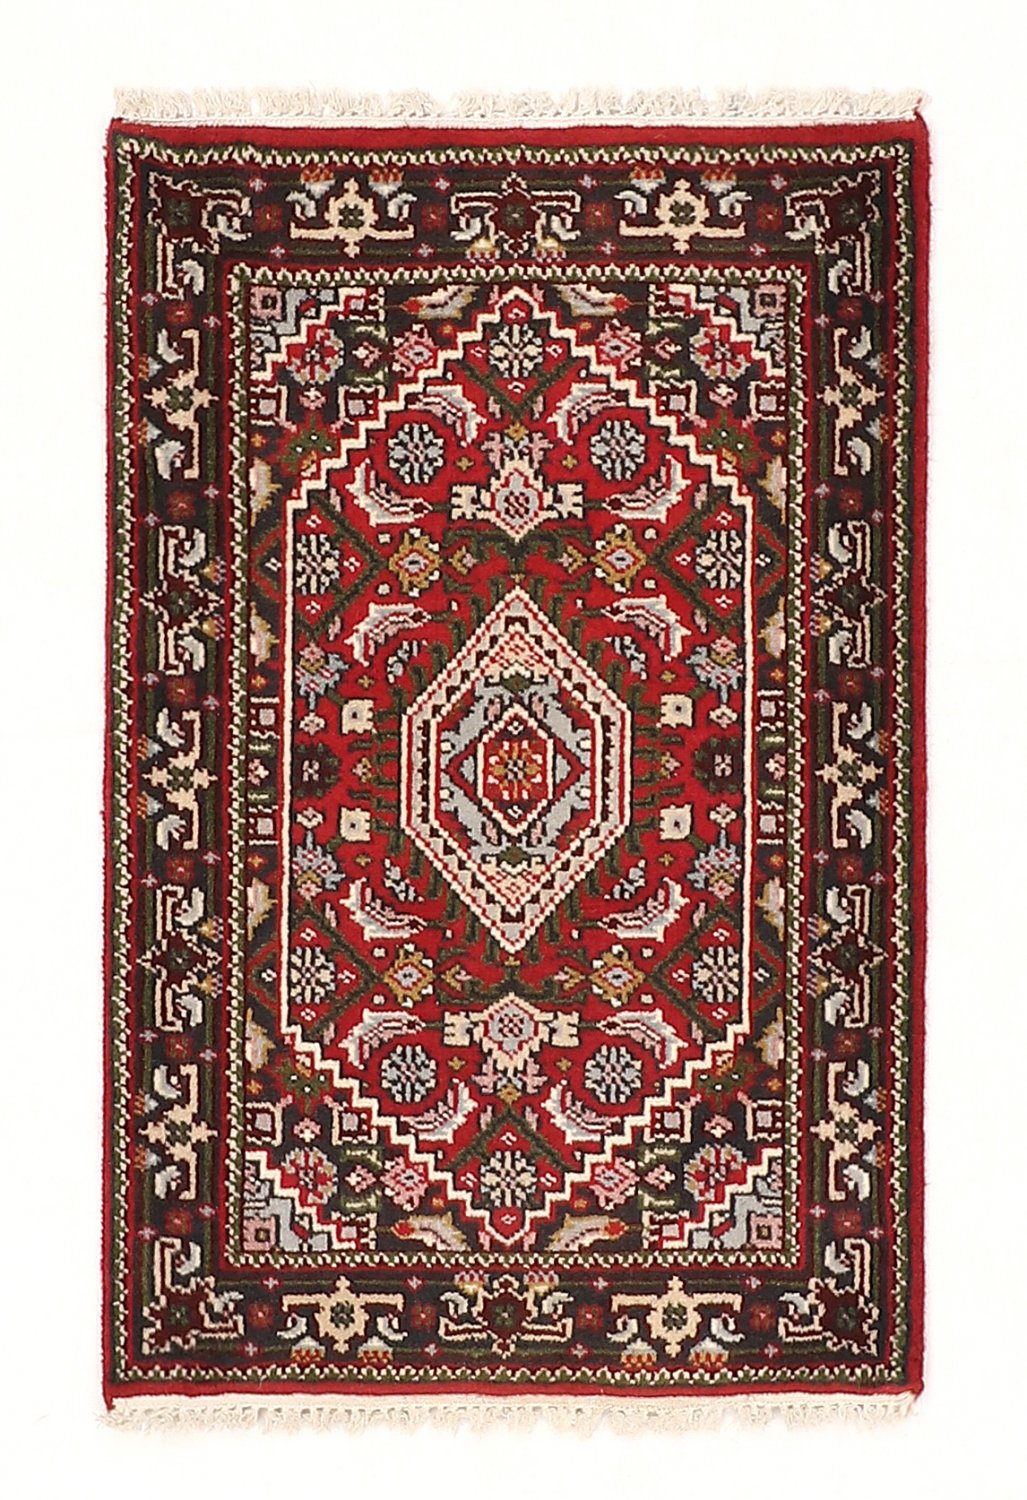 Persian rug Hamedan 91 x 59 cm